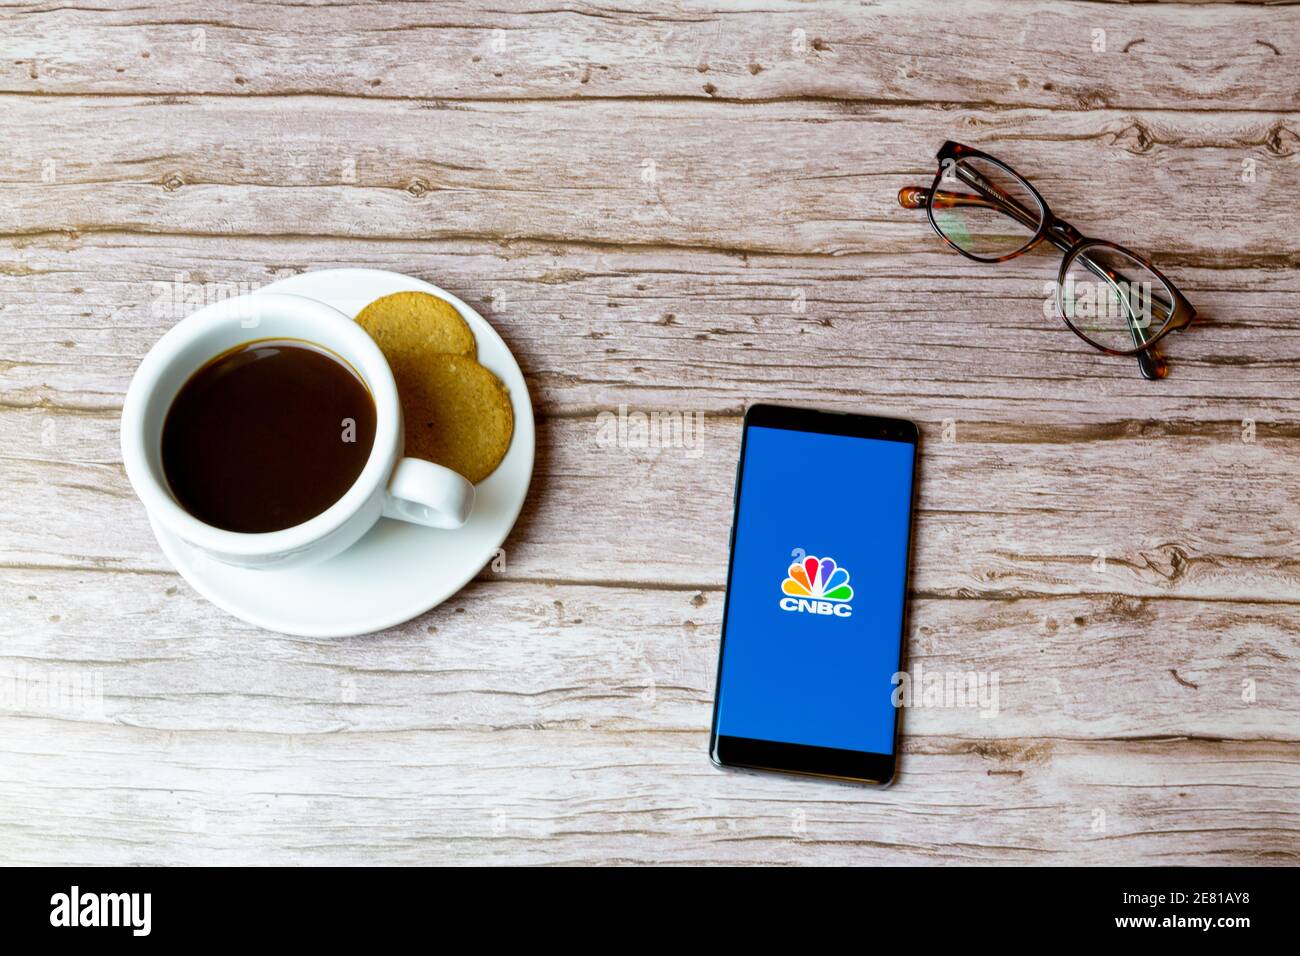 Un teléfono móvil o celular colocado sobre una madera Mesa con una aplicación de noticias CNBC abriendo también un café y gafas Foto de stock